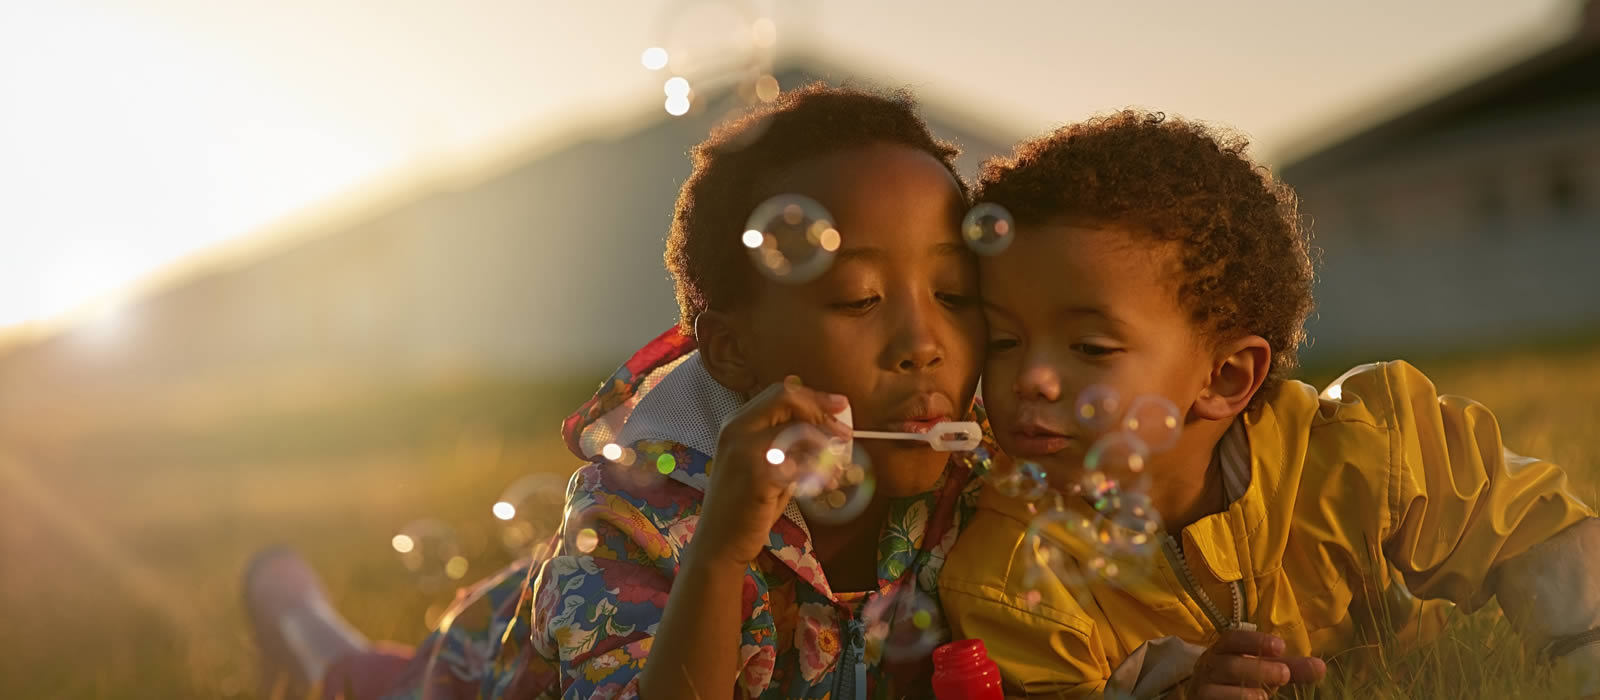 kids blowing bubbles